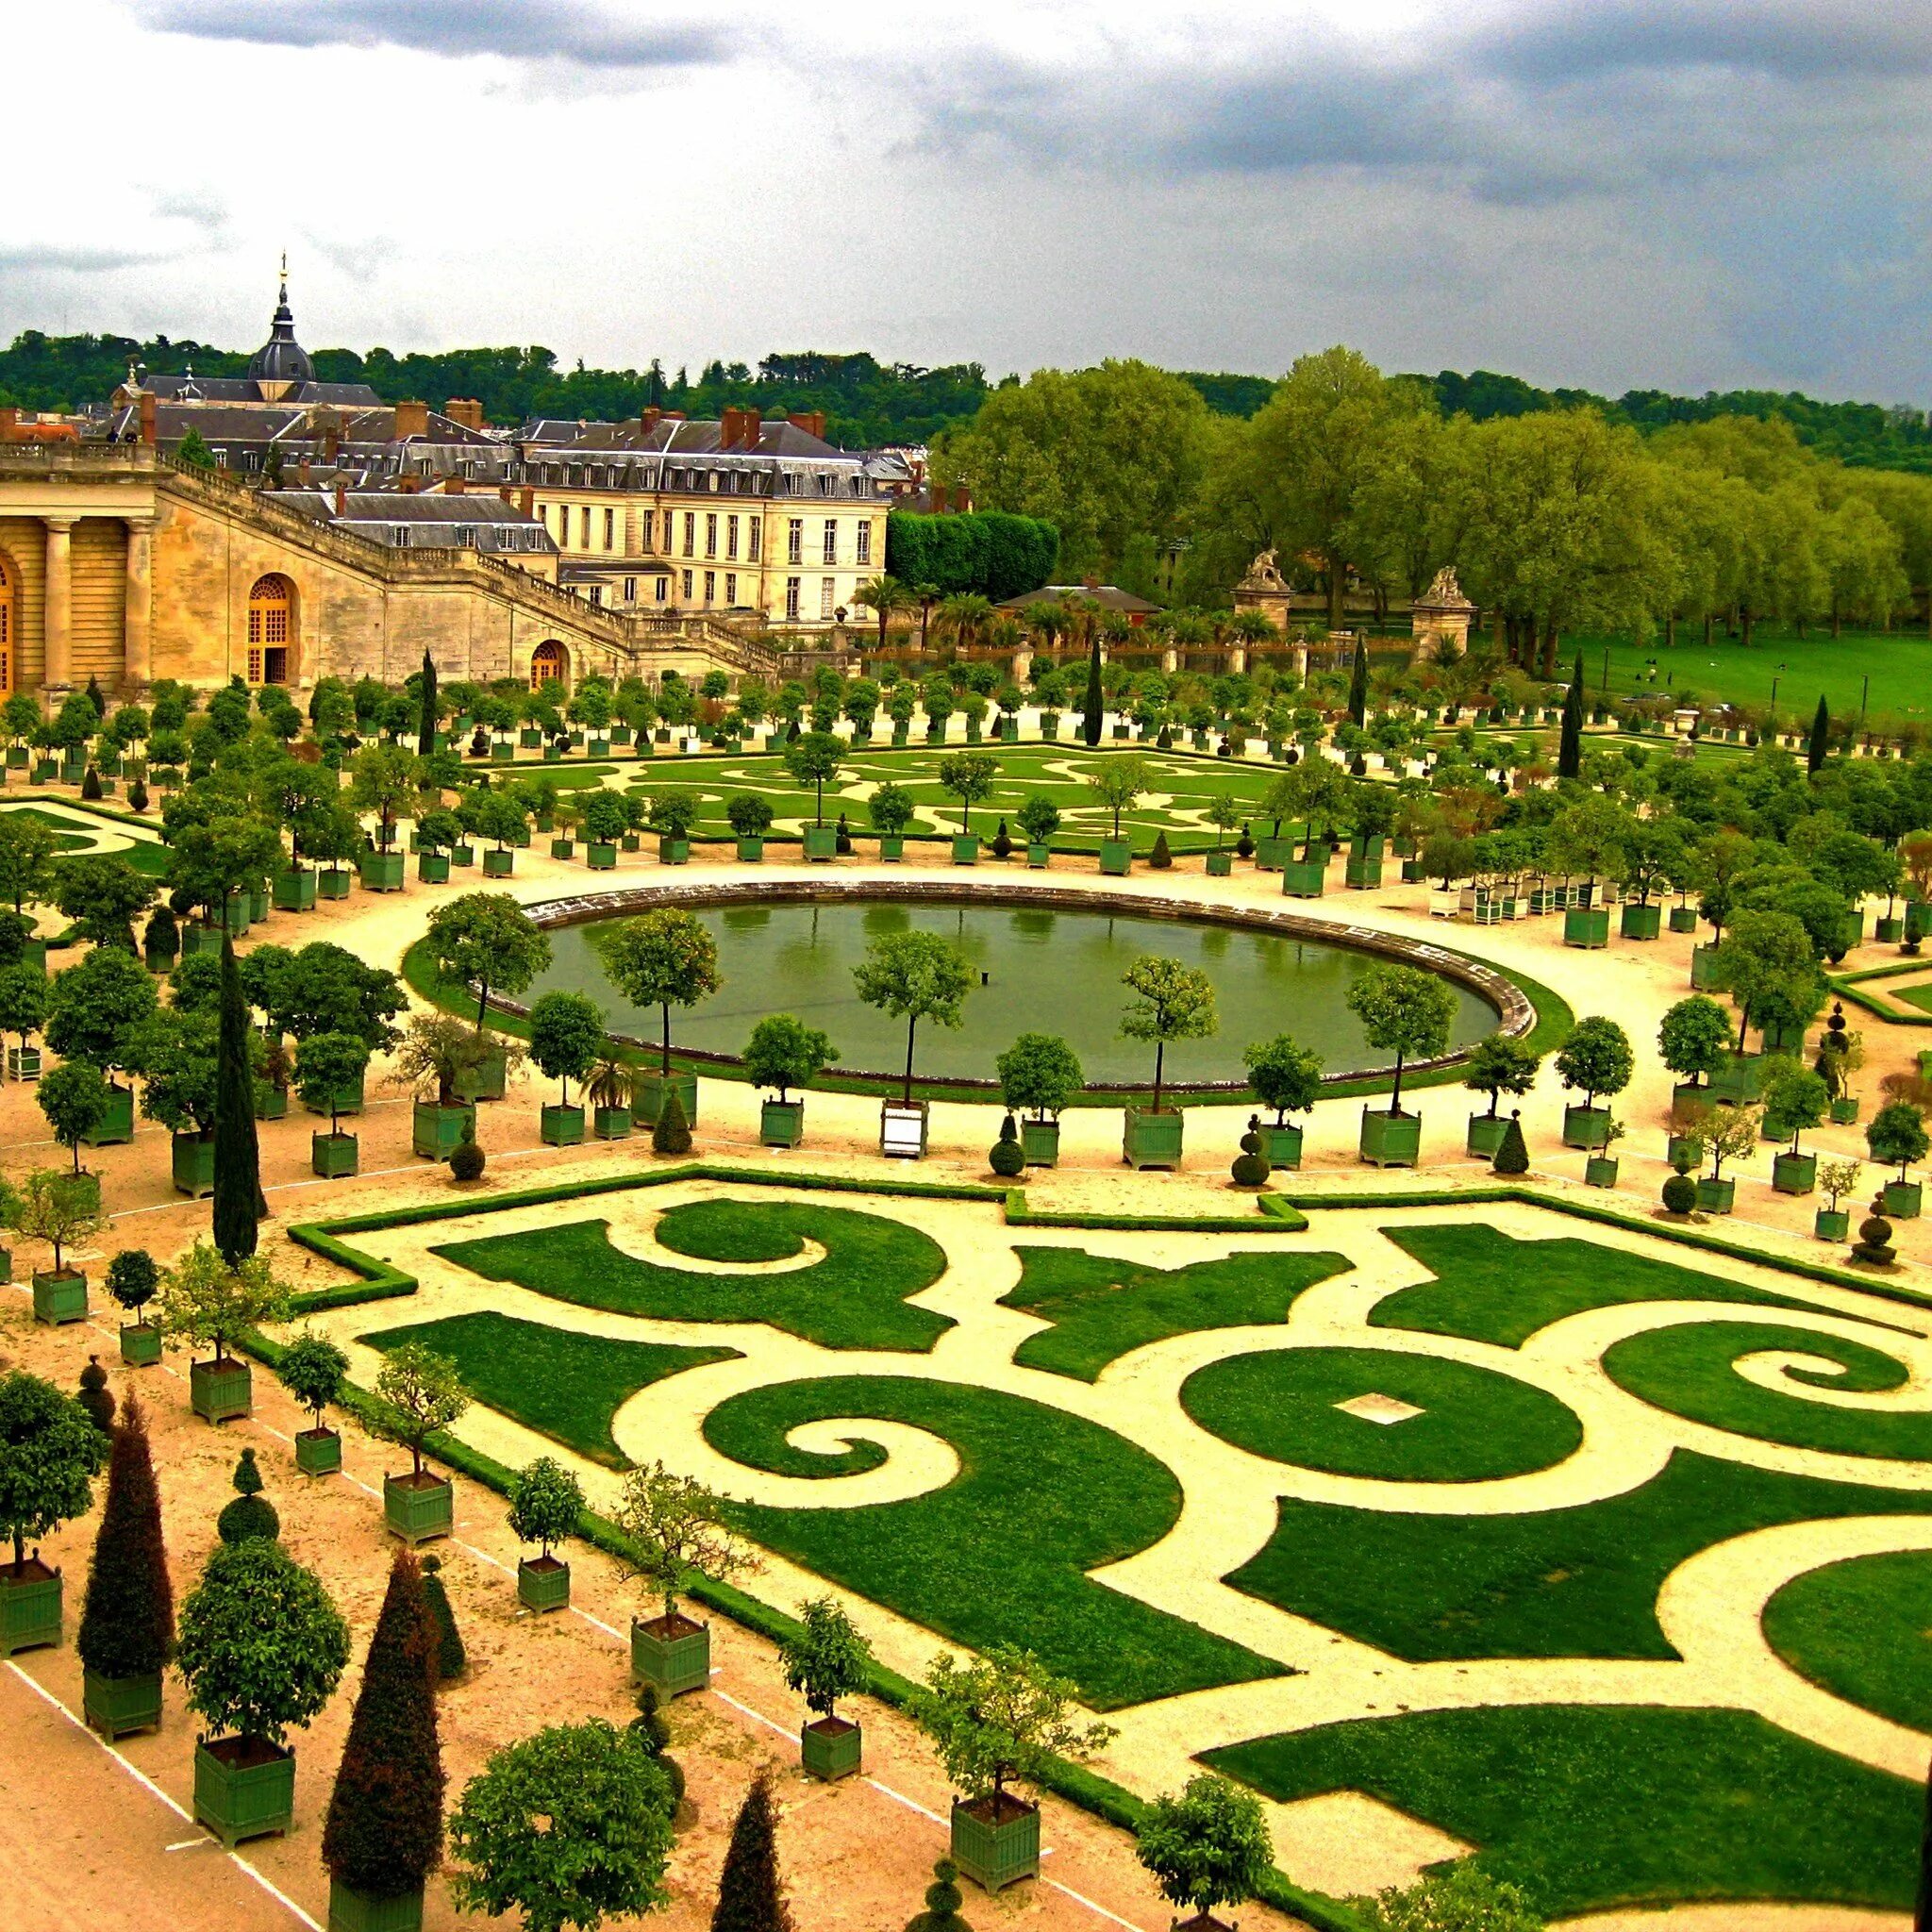 Версальский дворцово-парковый комплекс, Франция. Парковый ансамбль Версаля во Франции. Версальский дворец Версаль Франция. Про версаль